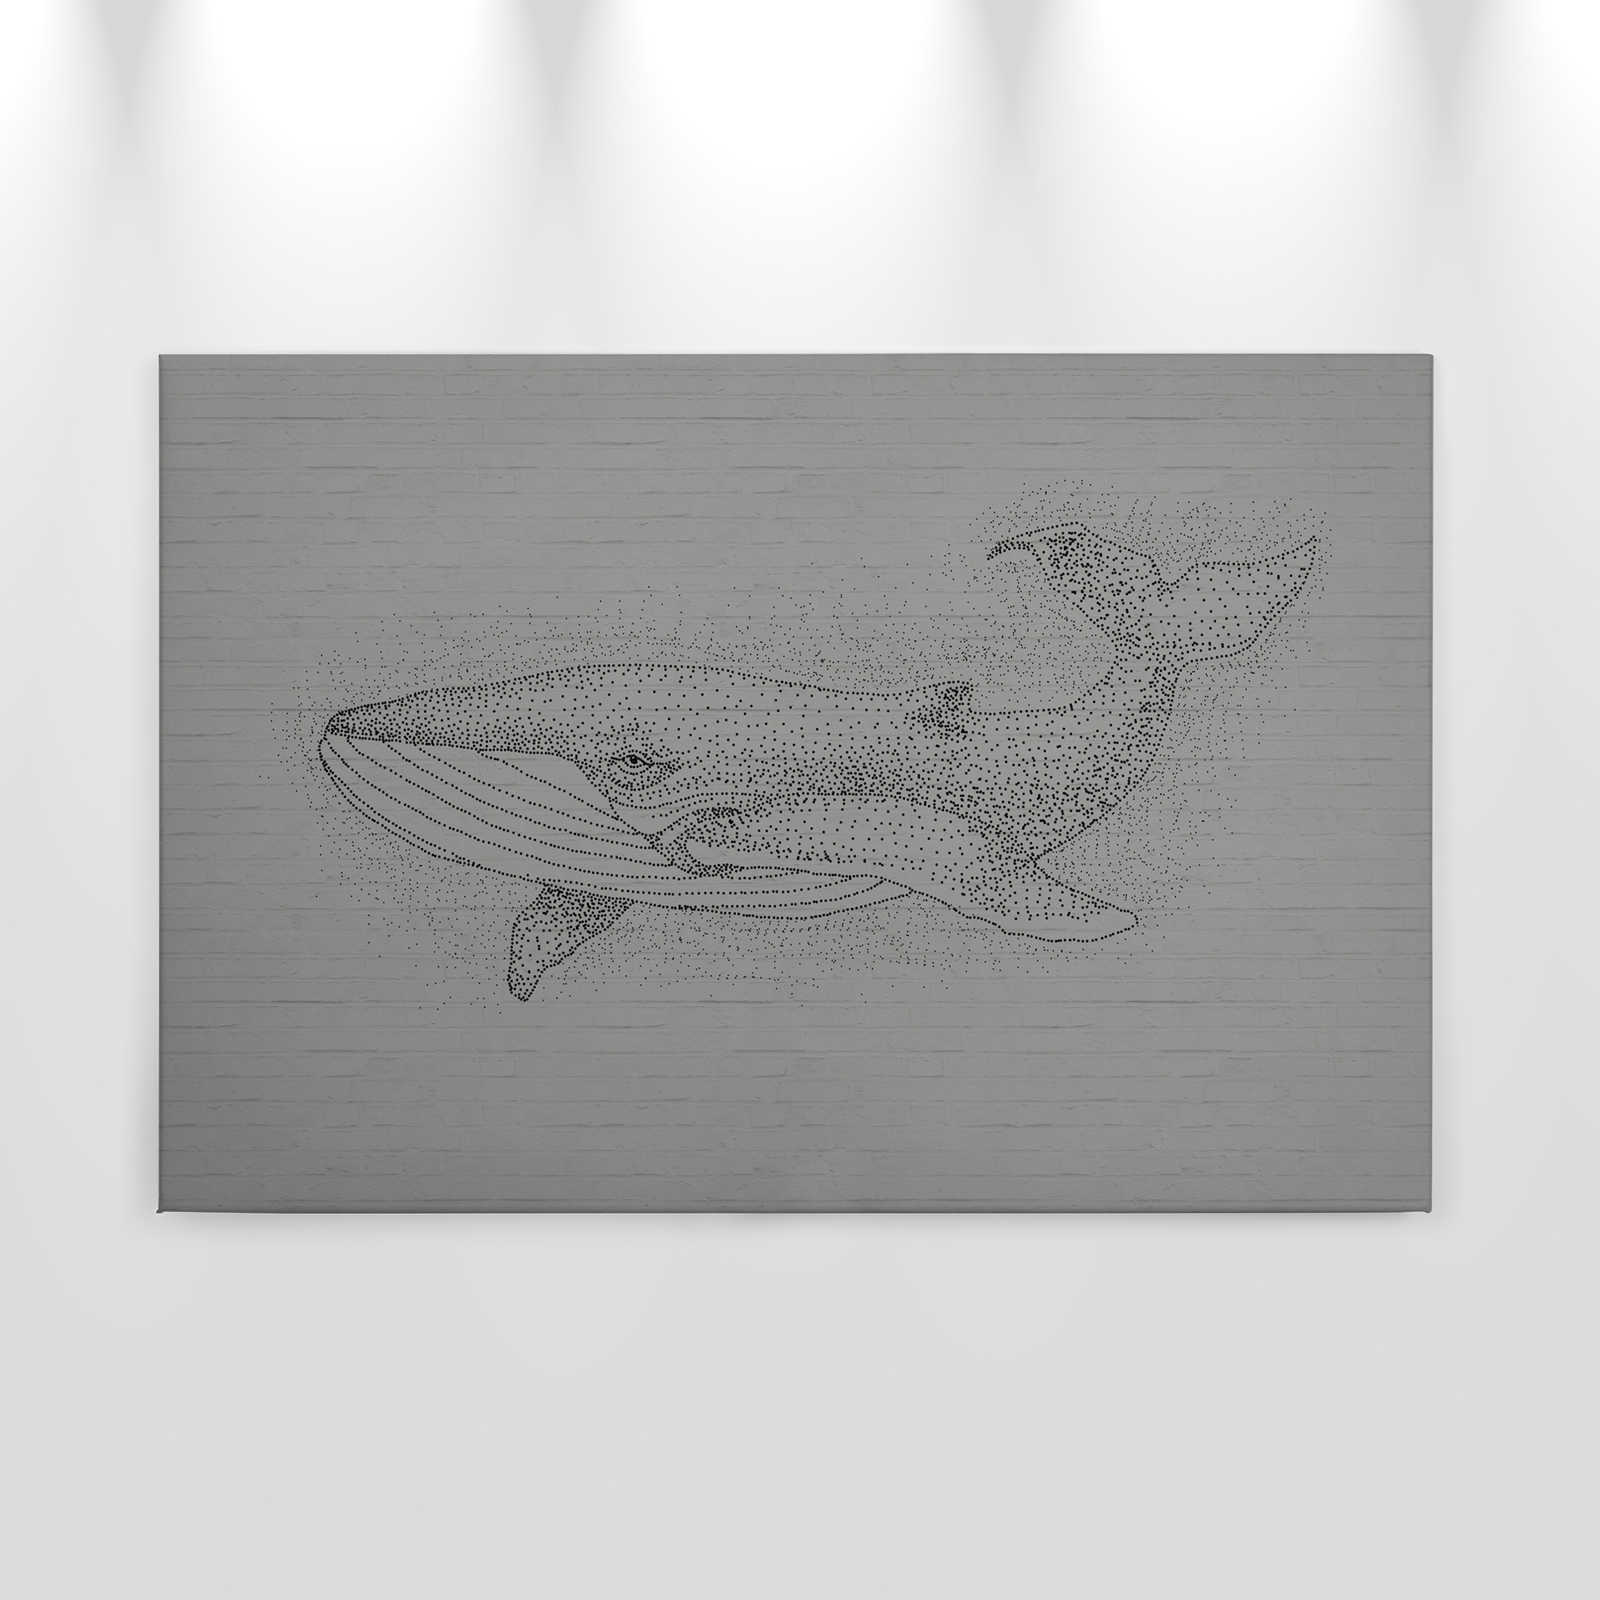             Toile Baleine style dessin sur mur de pierre 3D - 0,90 m x 0,60 m
        